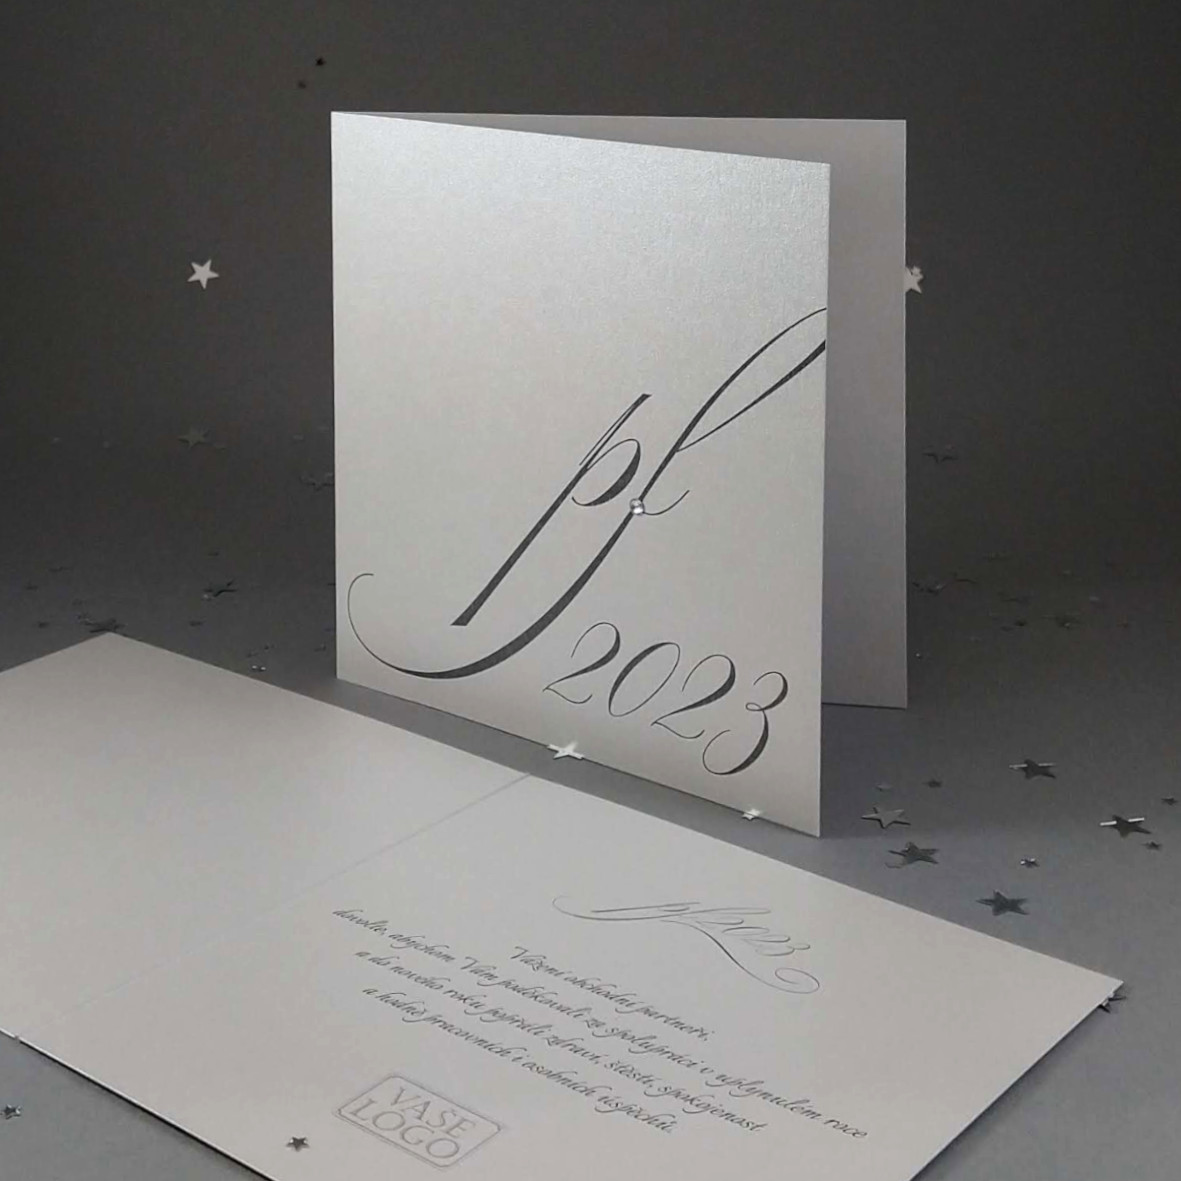 Novoroční–vánoční přání s elegantním motivem pf2023 s ledovým krystalem. Otevírací, formát 140 × 140 mm, digitální tisk, stříbrný perleťový papír.